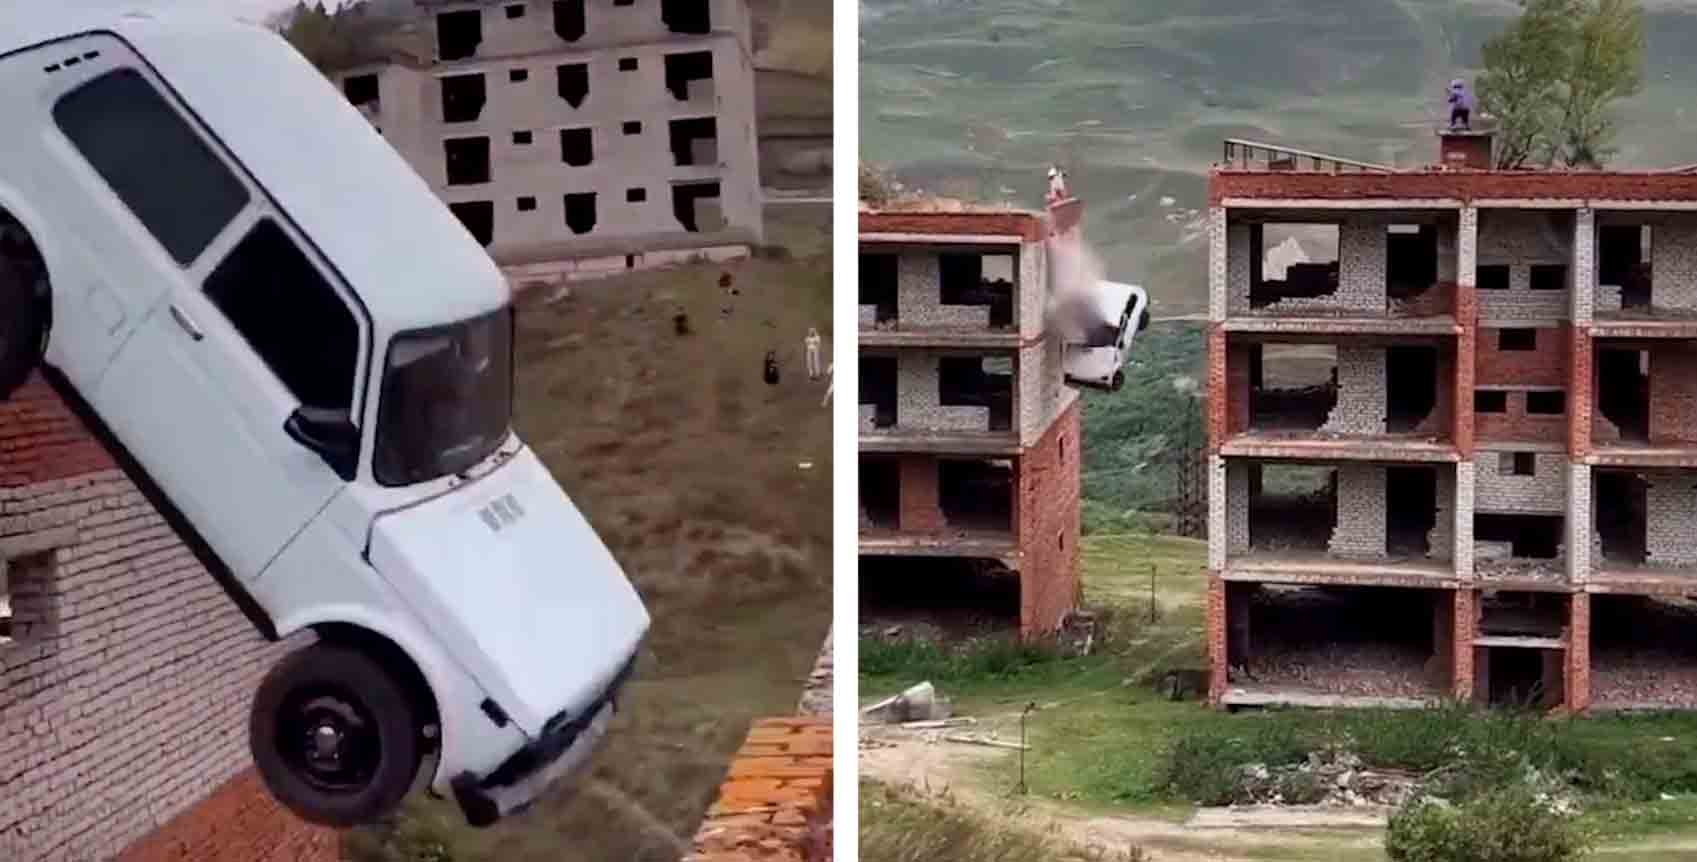 Video: Russer falder fra mere end 15 meters højde i forsøget på at krydse fra en bygning til en anden i bil